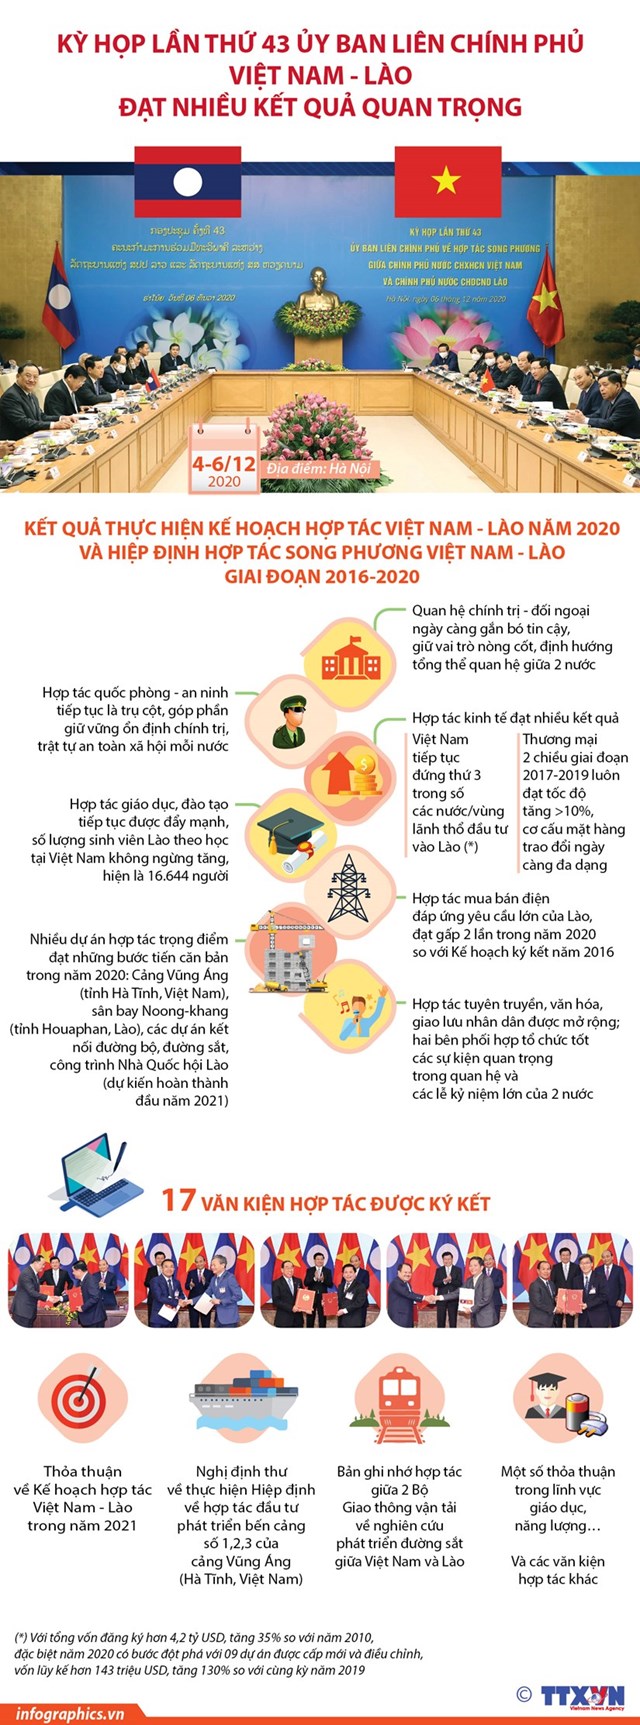 [Infographics] Kết quả kỳ họp lần thứ 43 Ủy ban liên Chính phủ Việt Nam - Lào - Ảnh 1